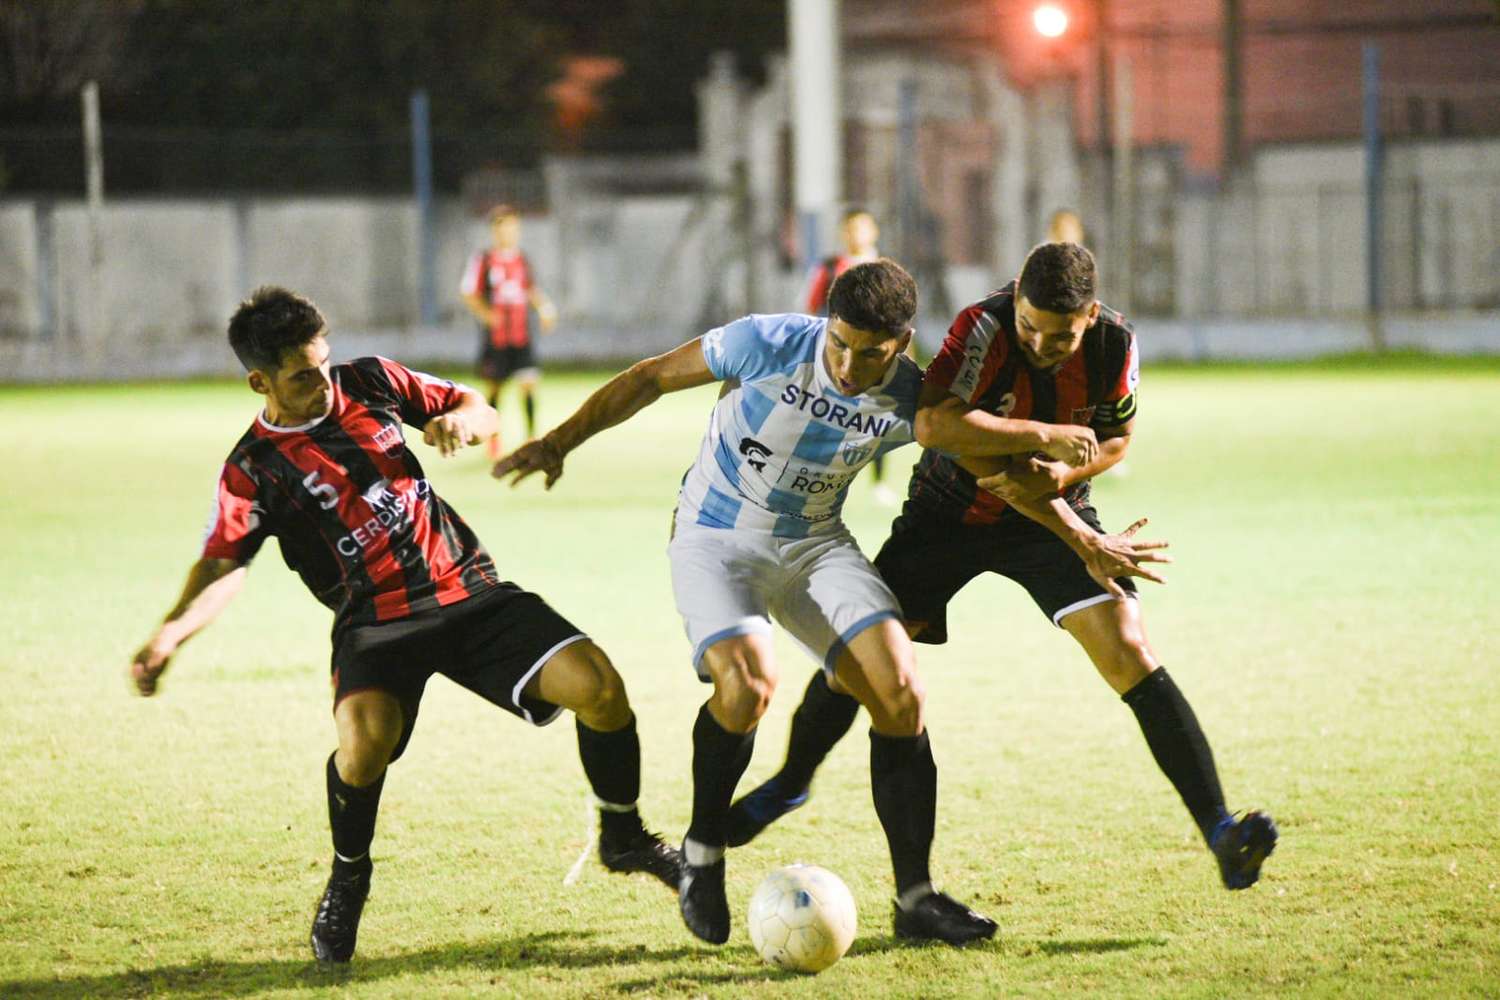 Noche de clásicos: ganaron Juventud Unida, Sarmiento y Deportivo Urdinarrain